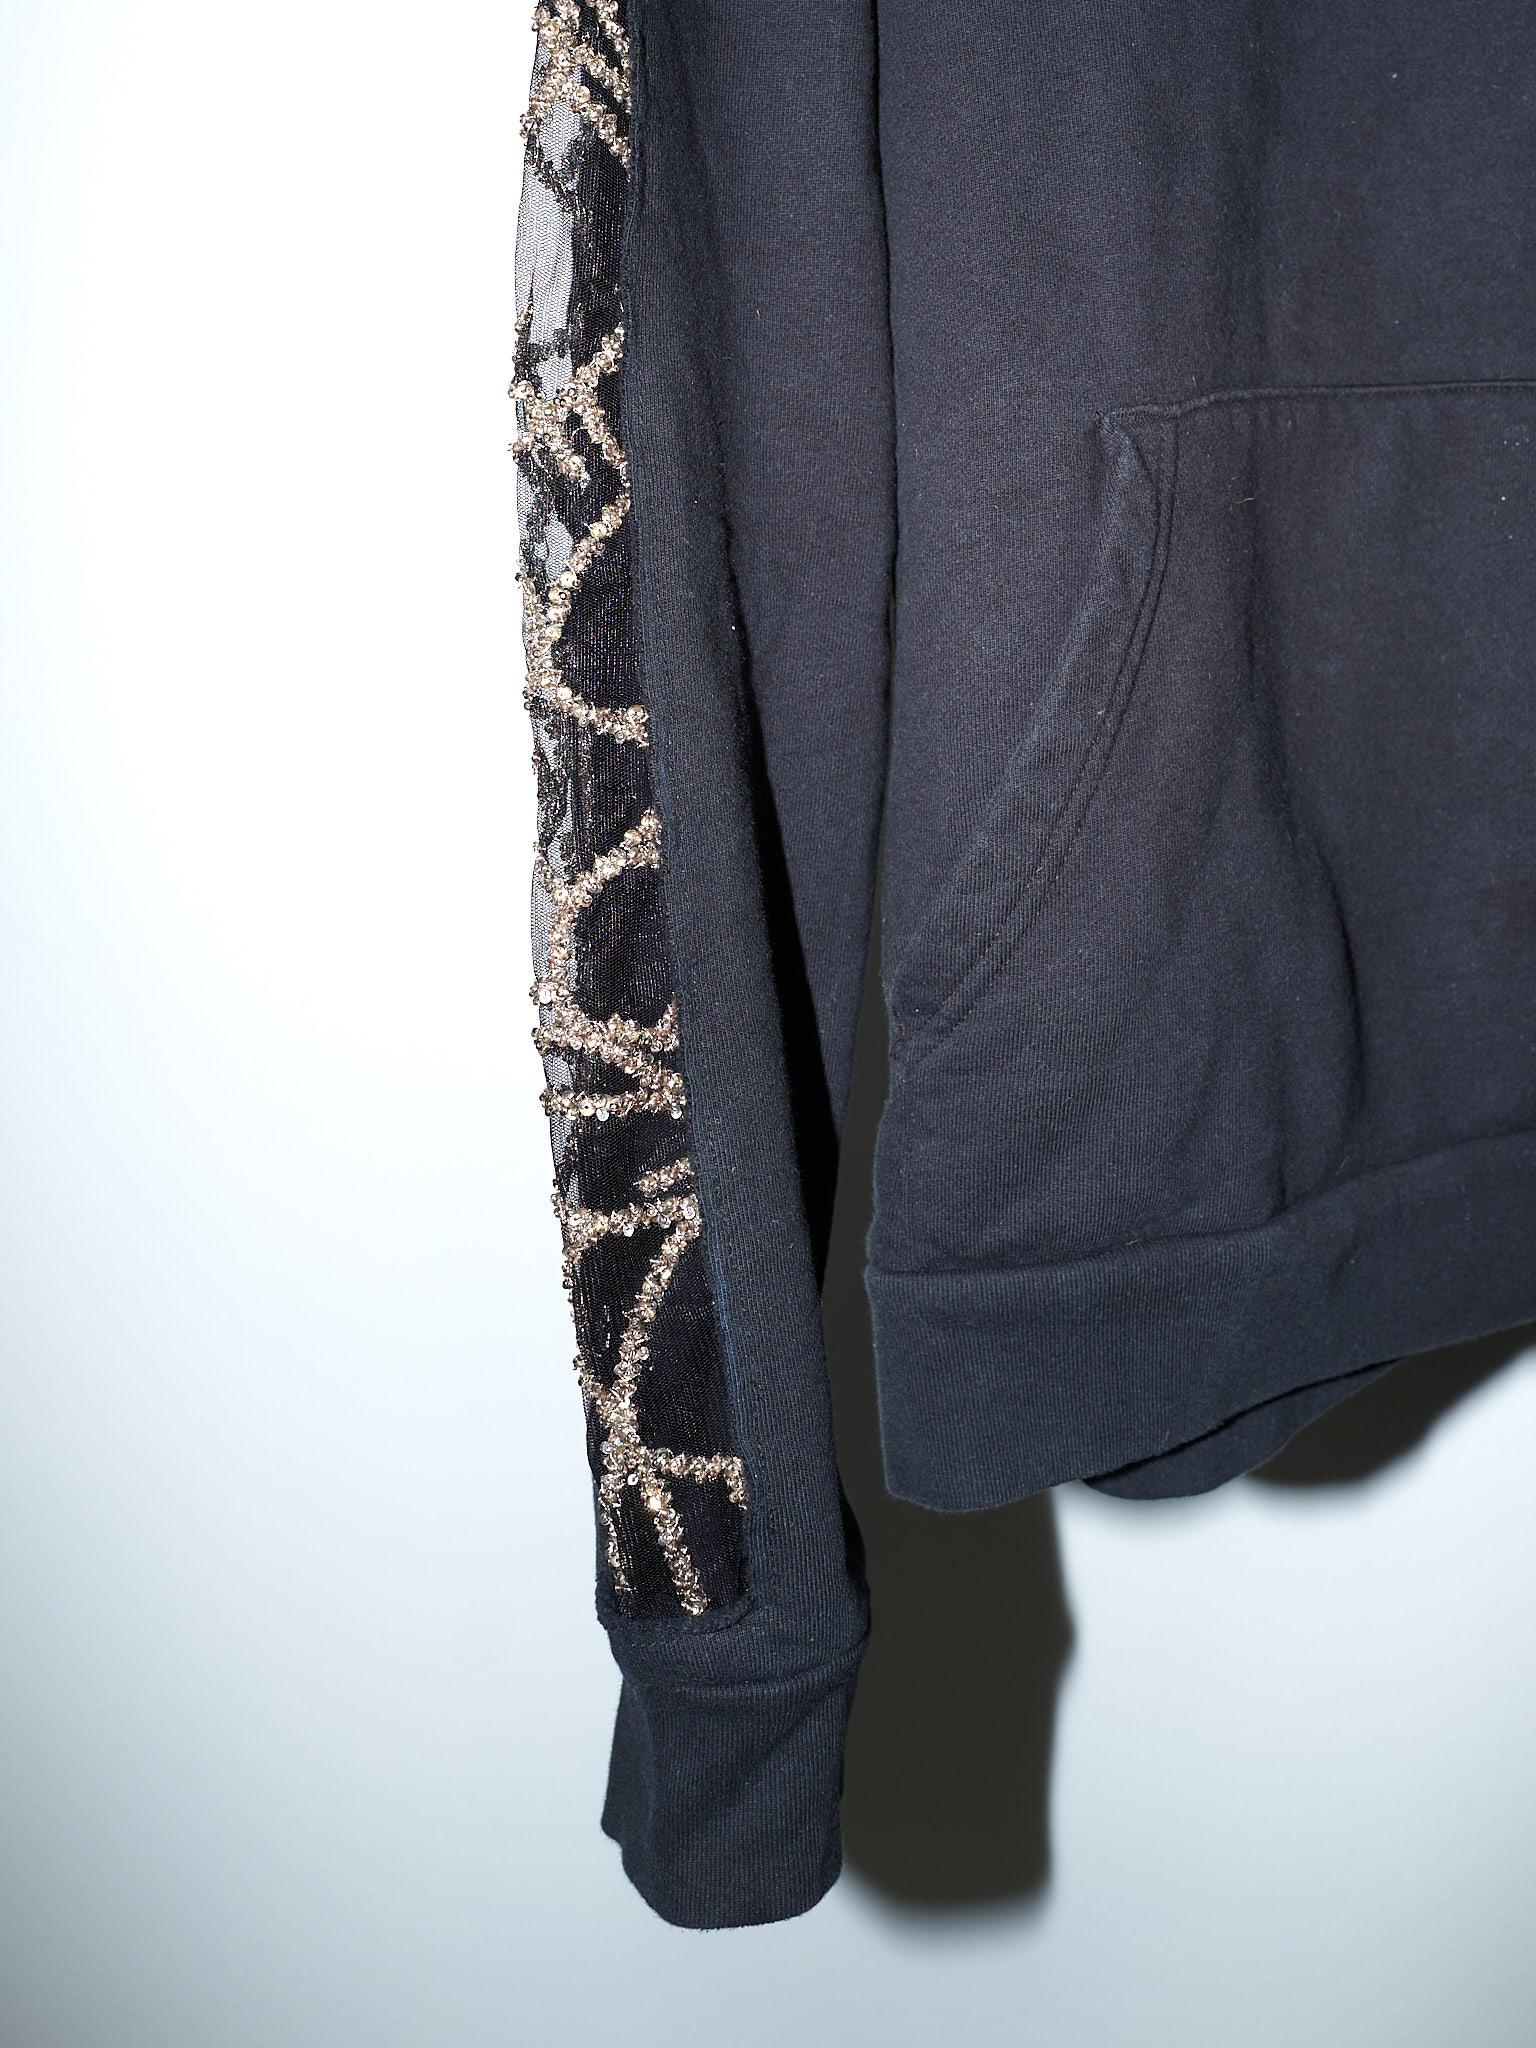 Women's Black Hoodie Sweatshirt Transparent Sheer Mesh Chrystal Embroidery J Dauphin For Sale